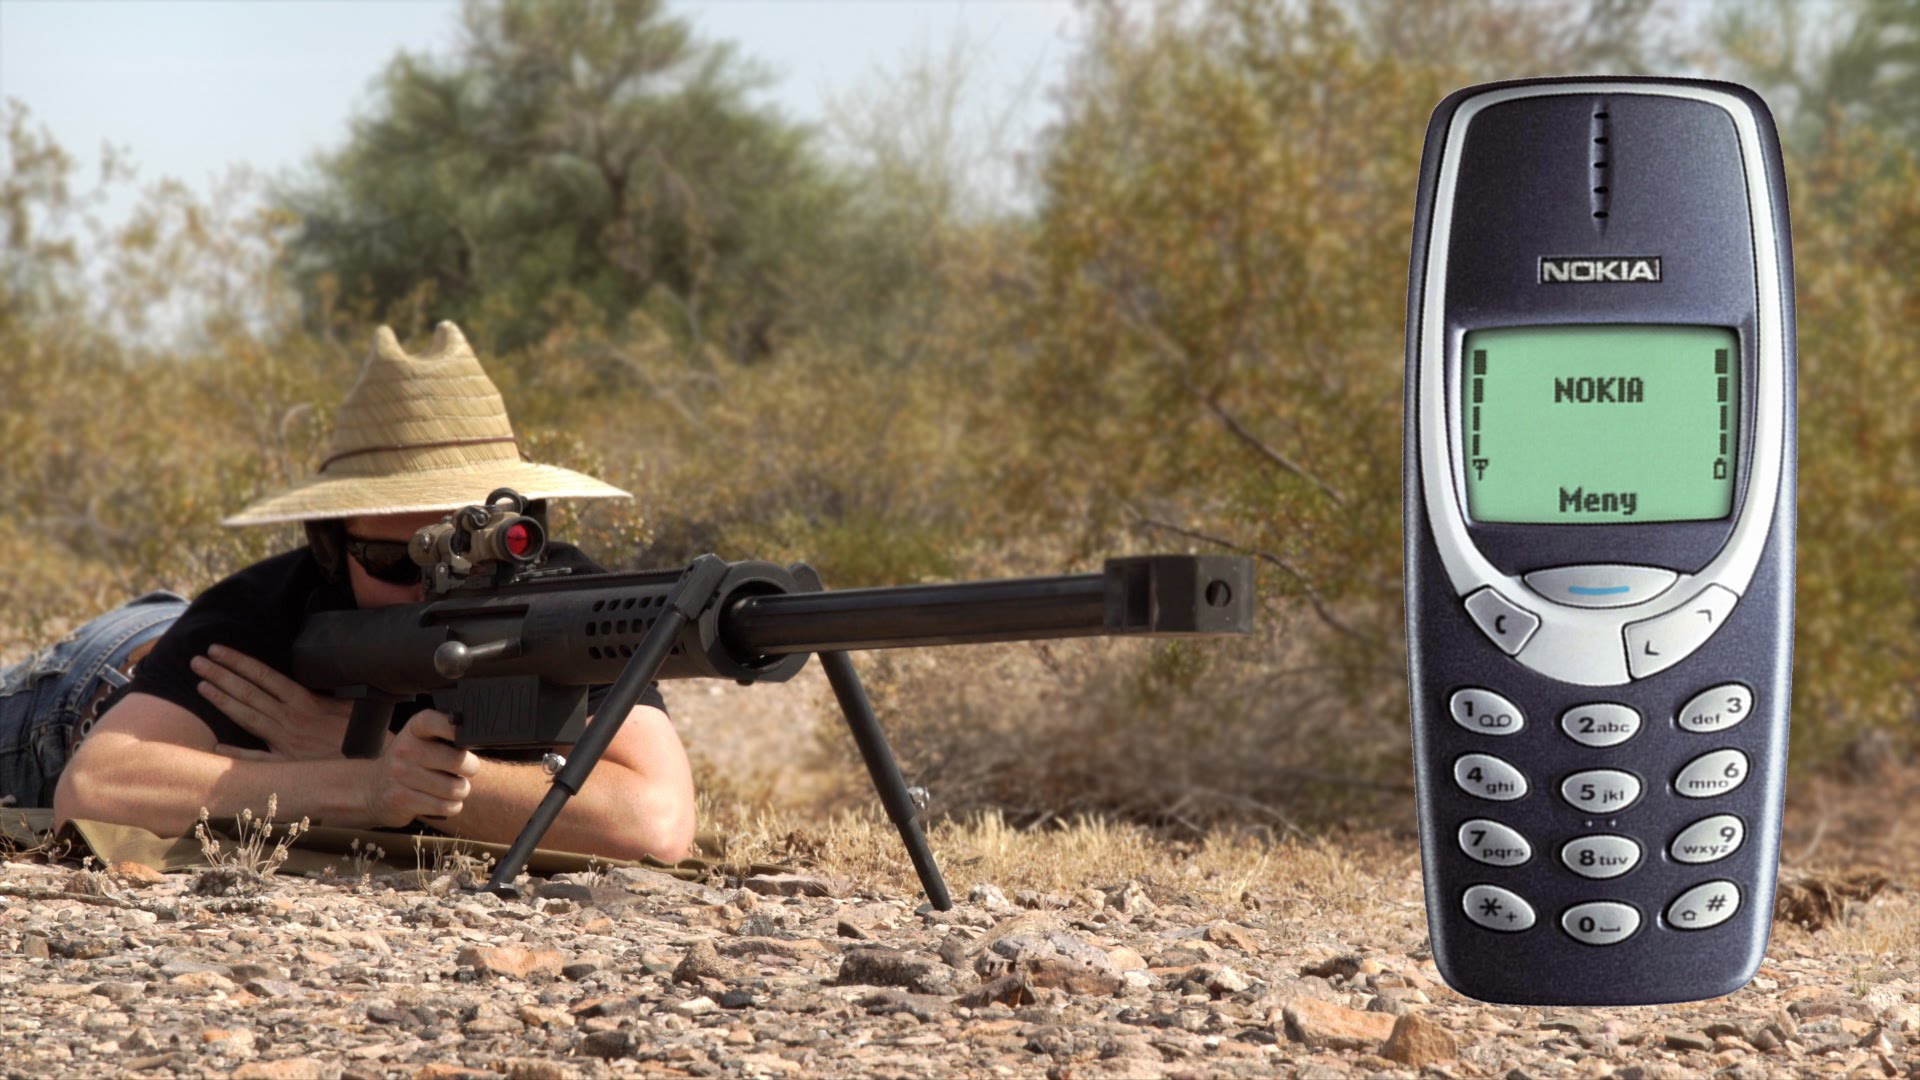 تماشاخانه: تکنولوژی در برابر گلوله | Nokia ۳۳۱۰ در برابر تفنگ ۲۰mm - تکفارس 